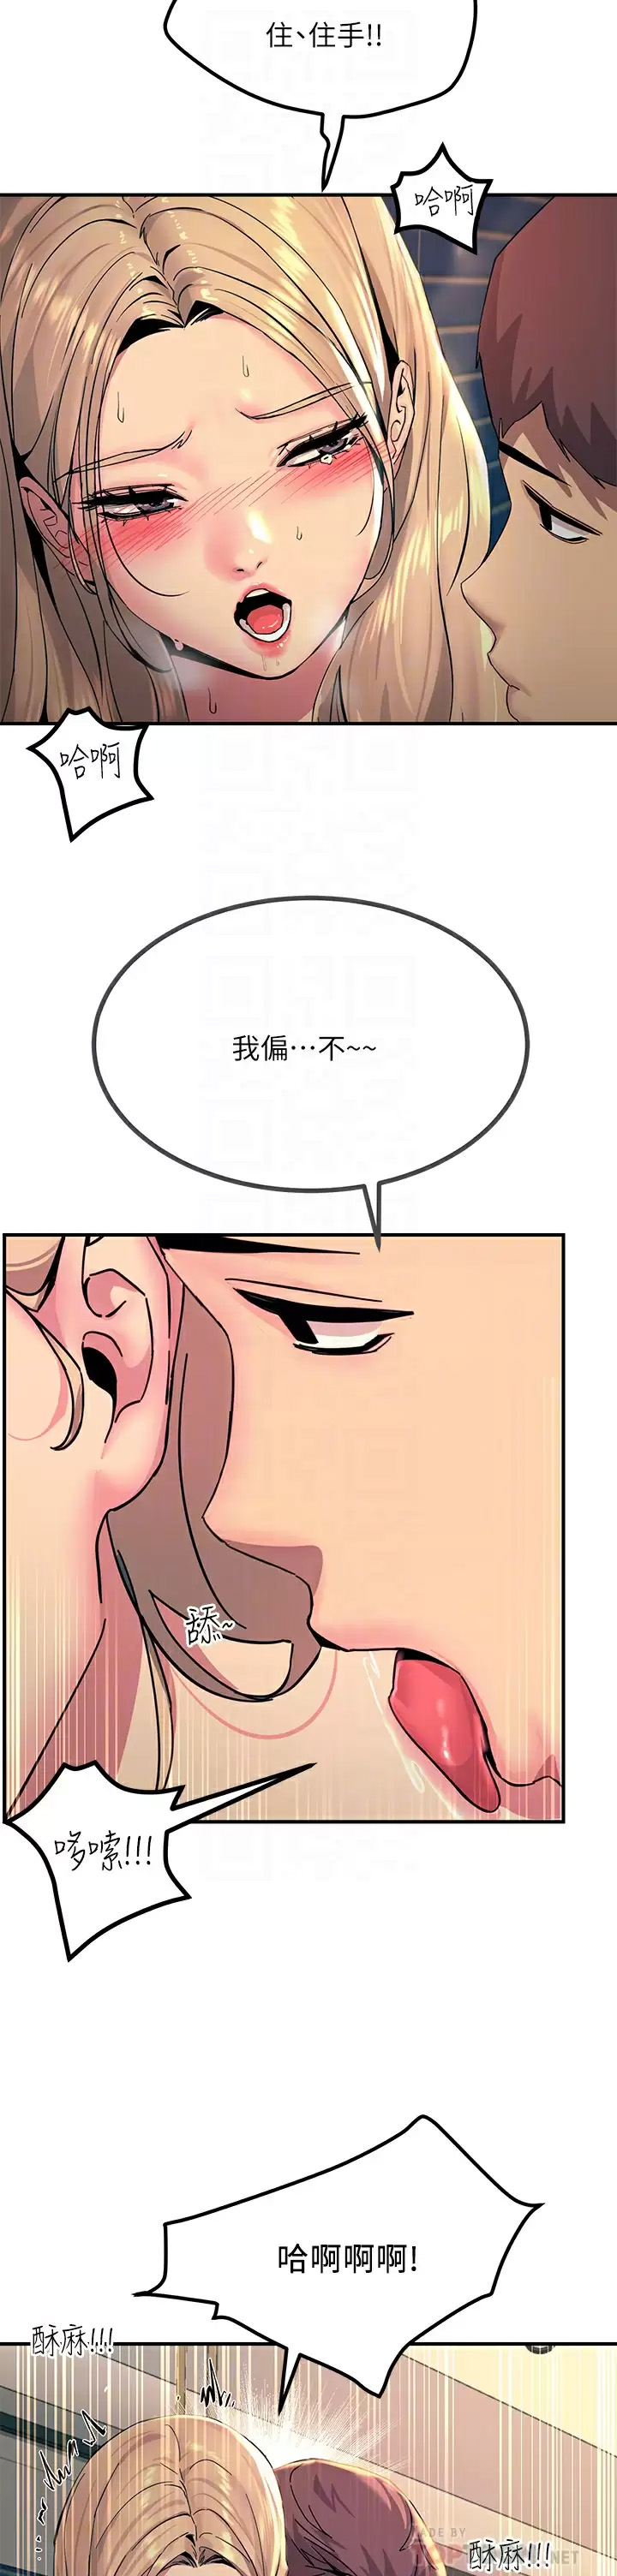 韩国污漫画 觸電大師 第28话 口是心非的诗芸 10